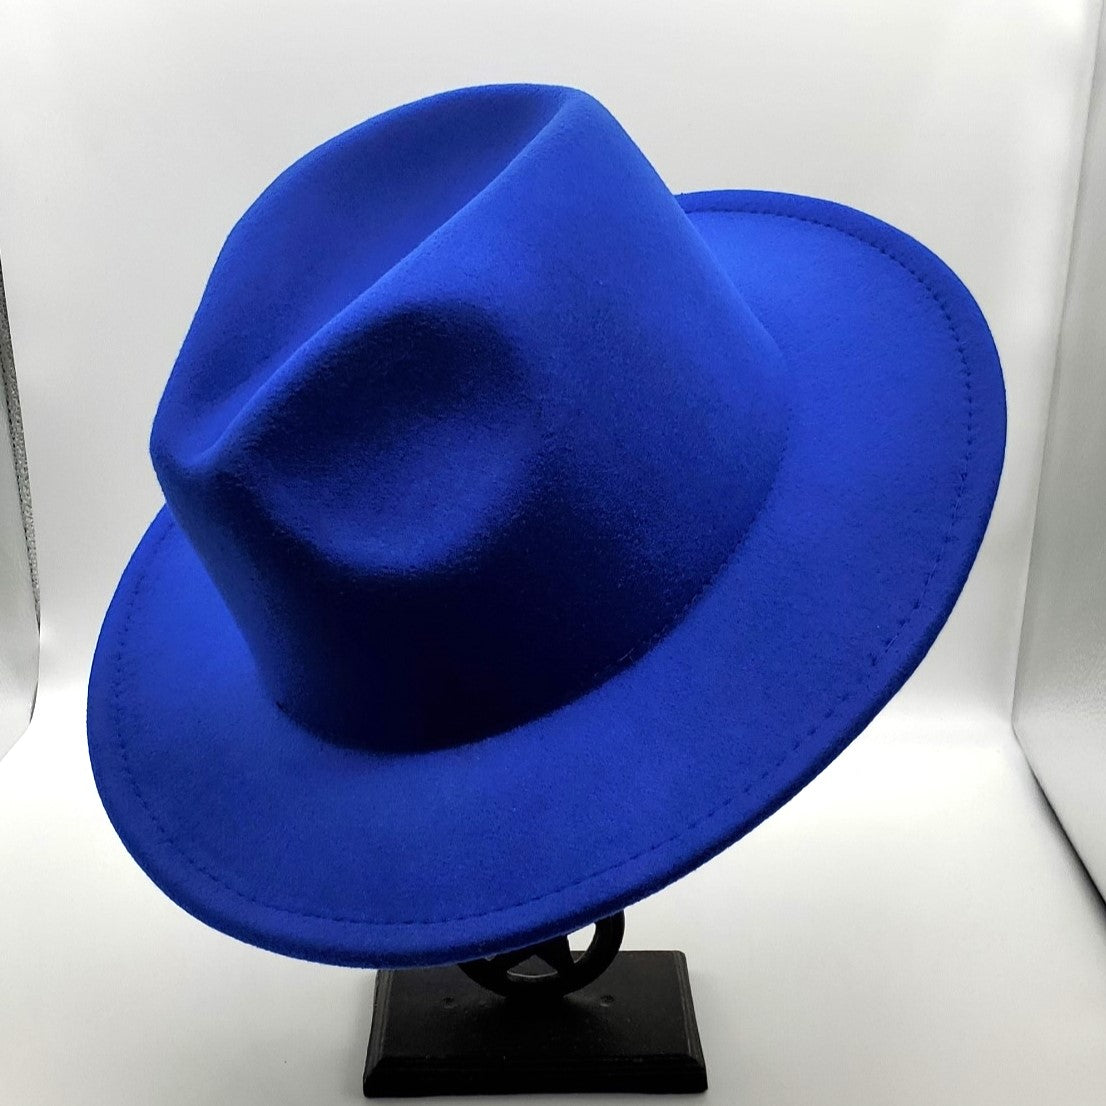 Royal Blue Leopard Hat